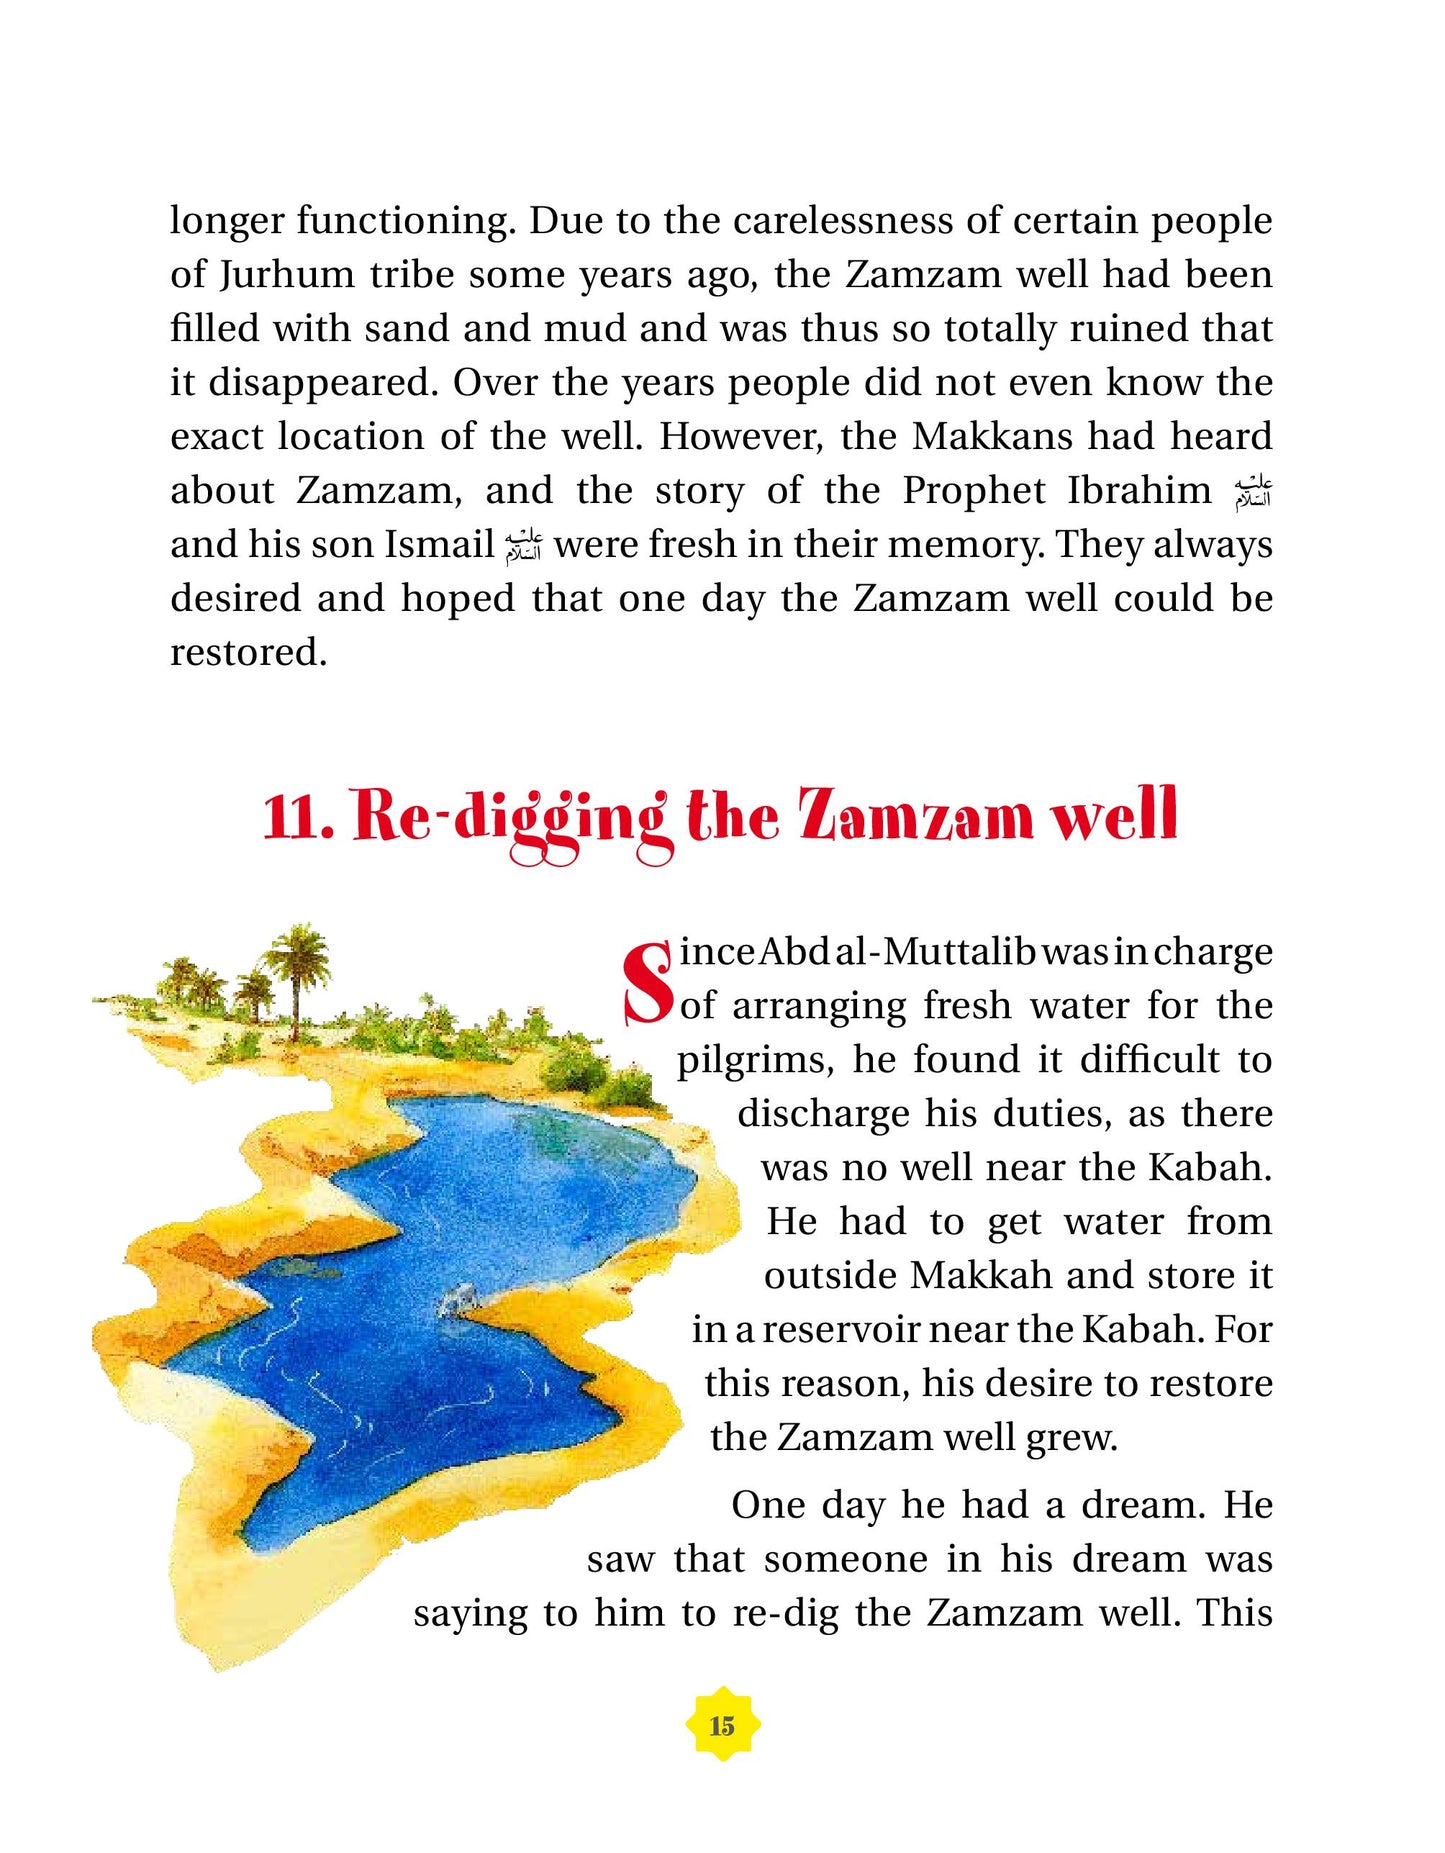 365 Prophet Muhammad Stories - Anafiya Gifts